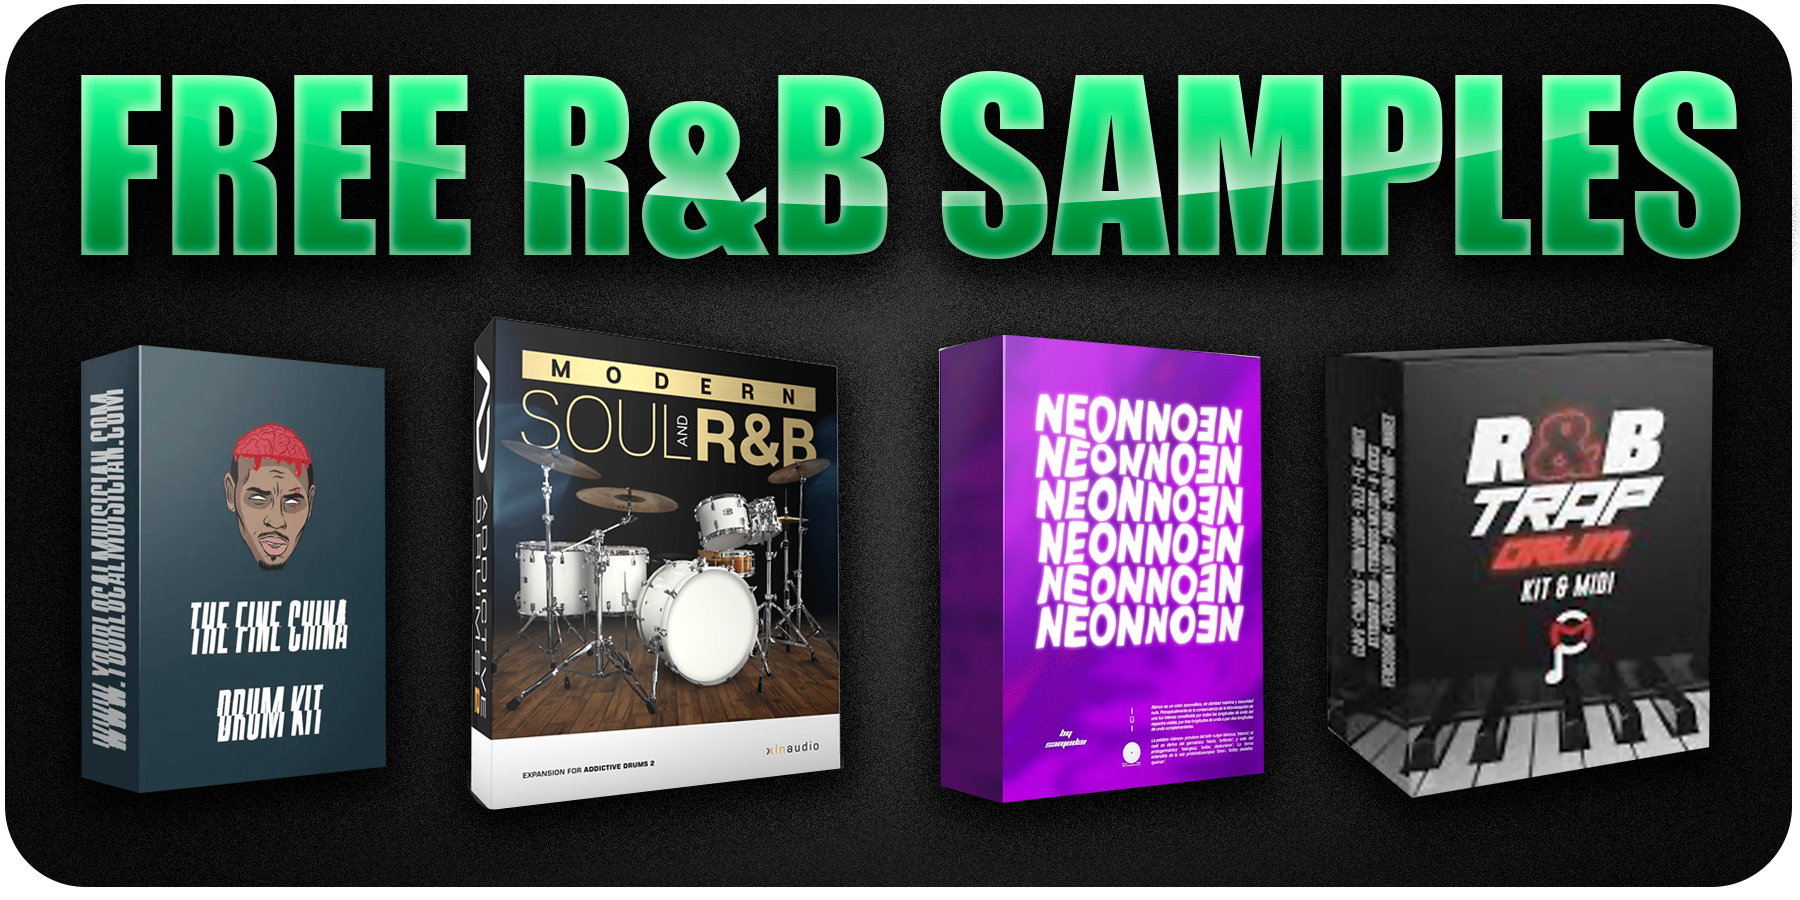 R&B samples download